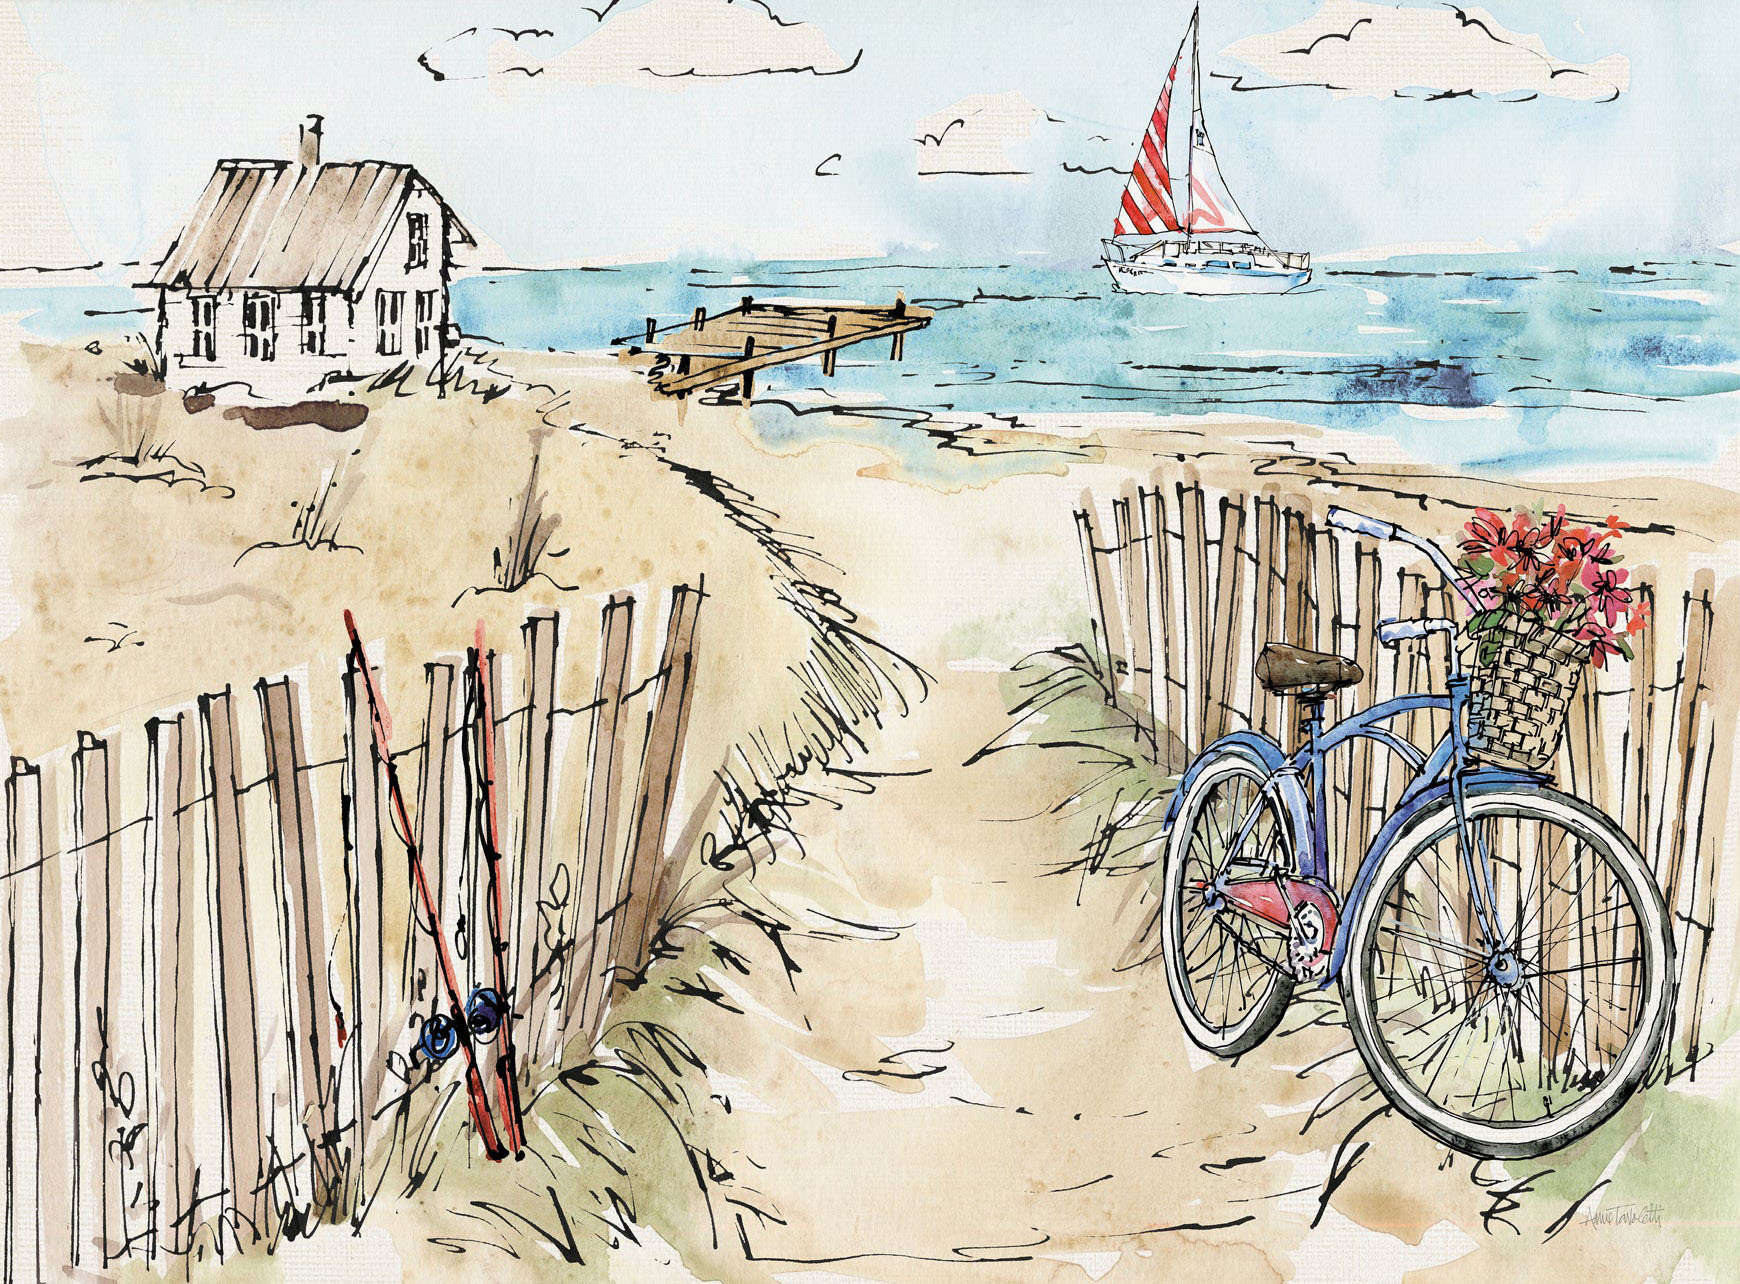 Tranh ngôi nhà và chiếc xe đạp trên bãi biển 4-2016